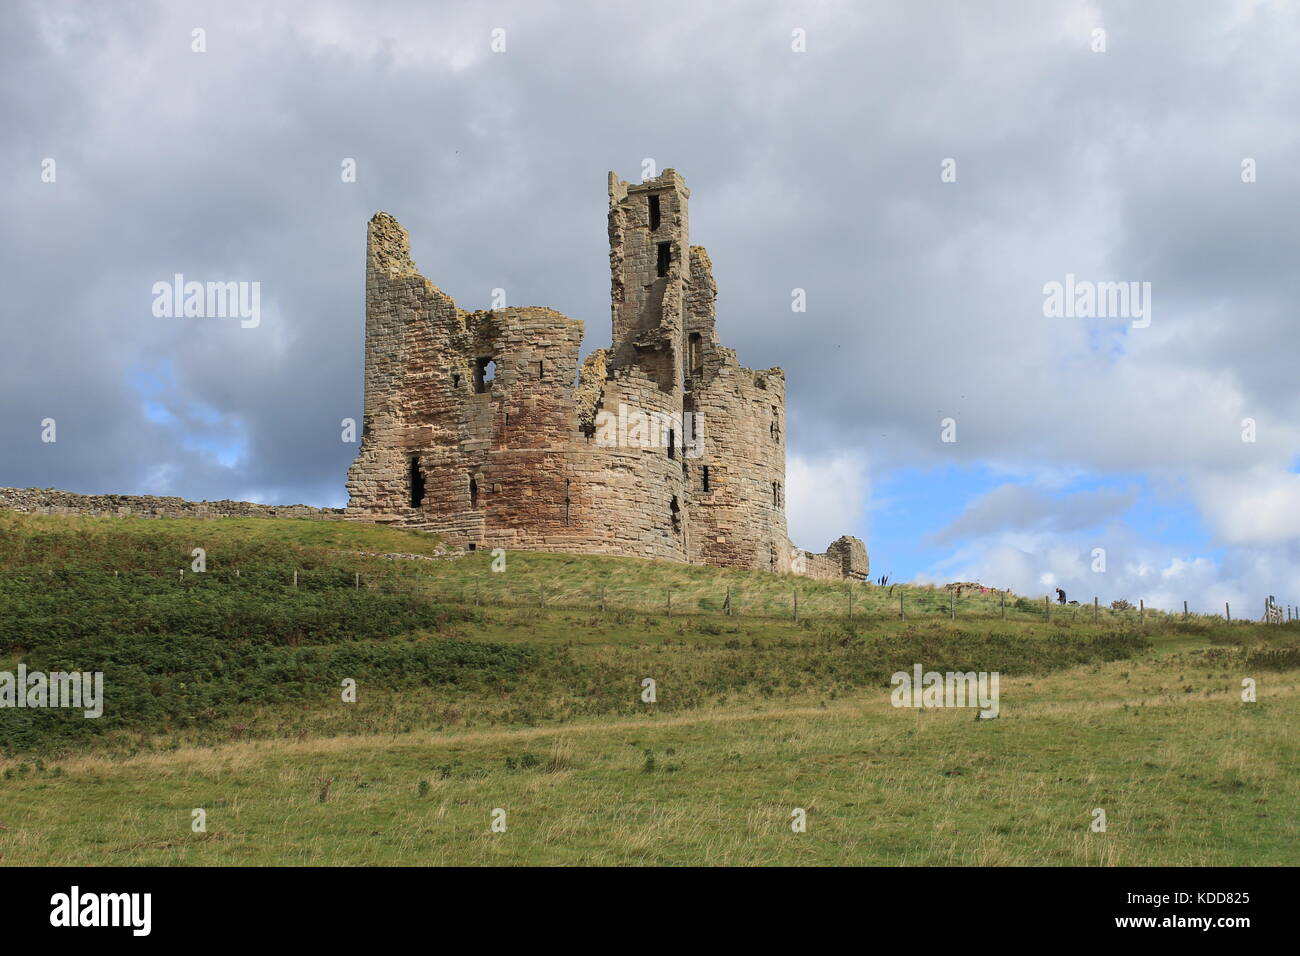 Donjon de Château de Dunstanburgh, Northumberland, Angleterre Banque D'Images